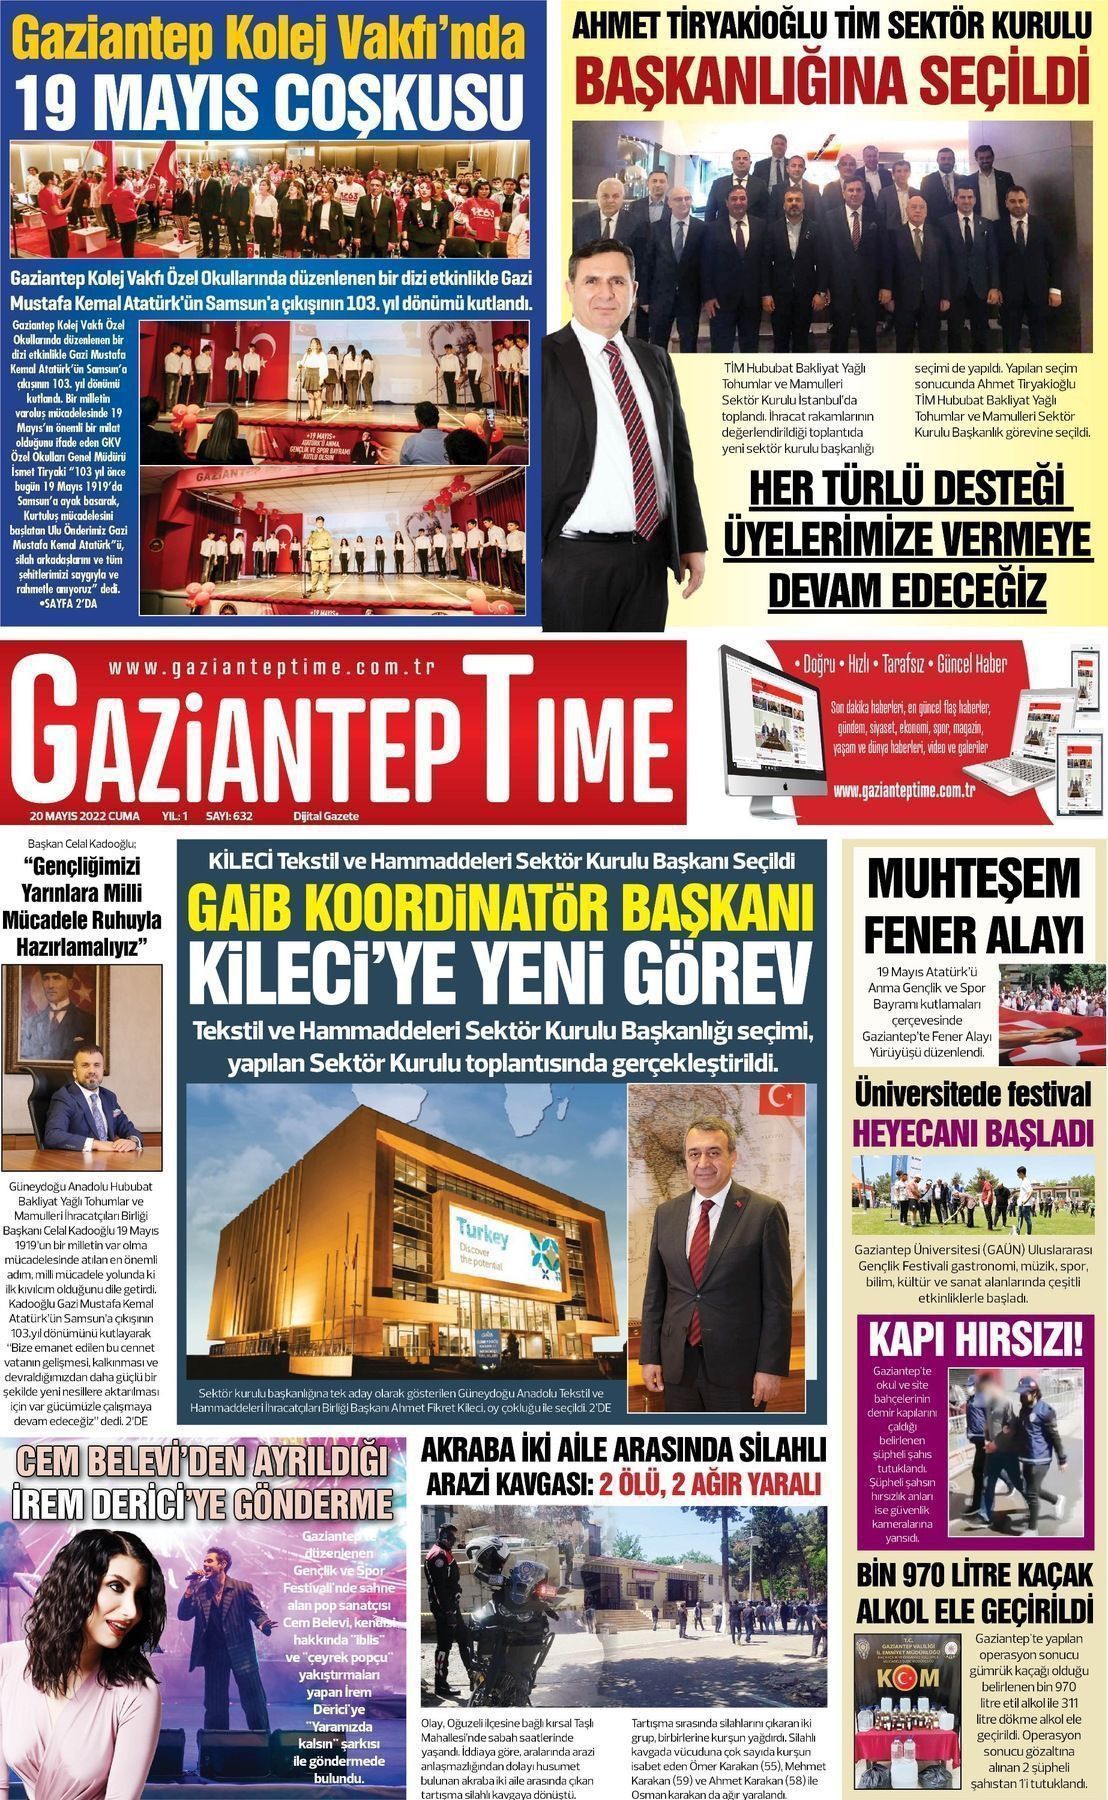 21 Mayıs 2022 Gaziantep Time Gazete Manşeti